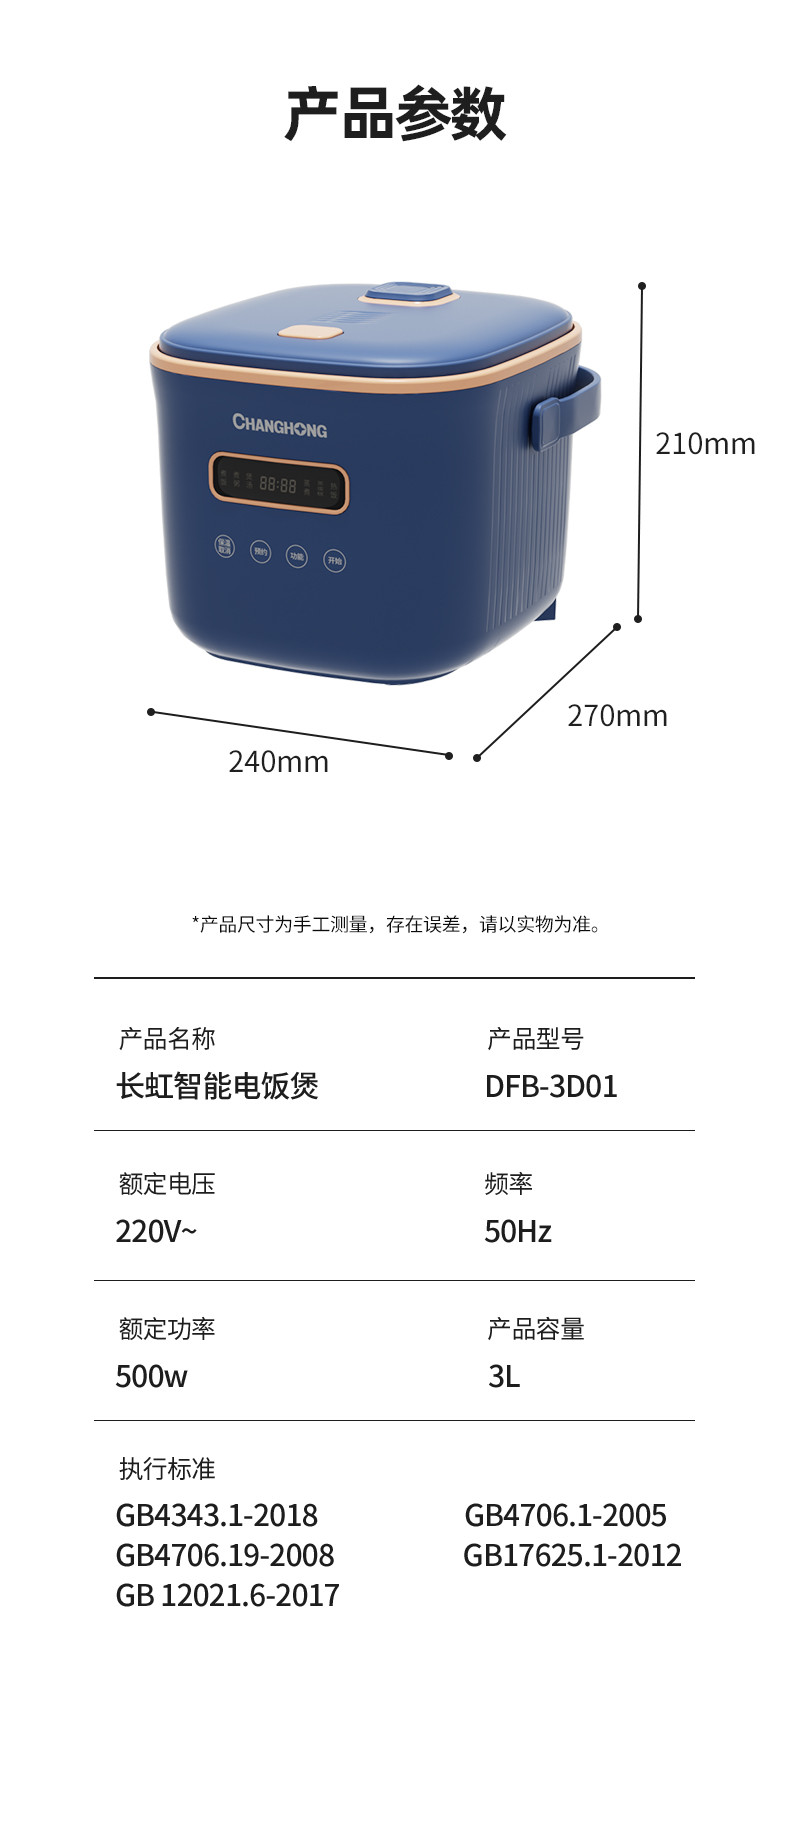 长虹 智能电饭煲DFB-3D01